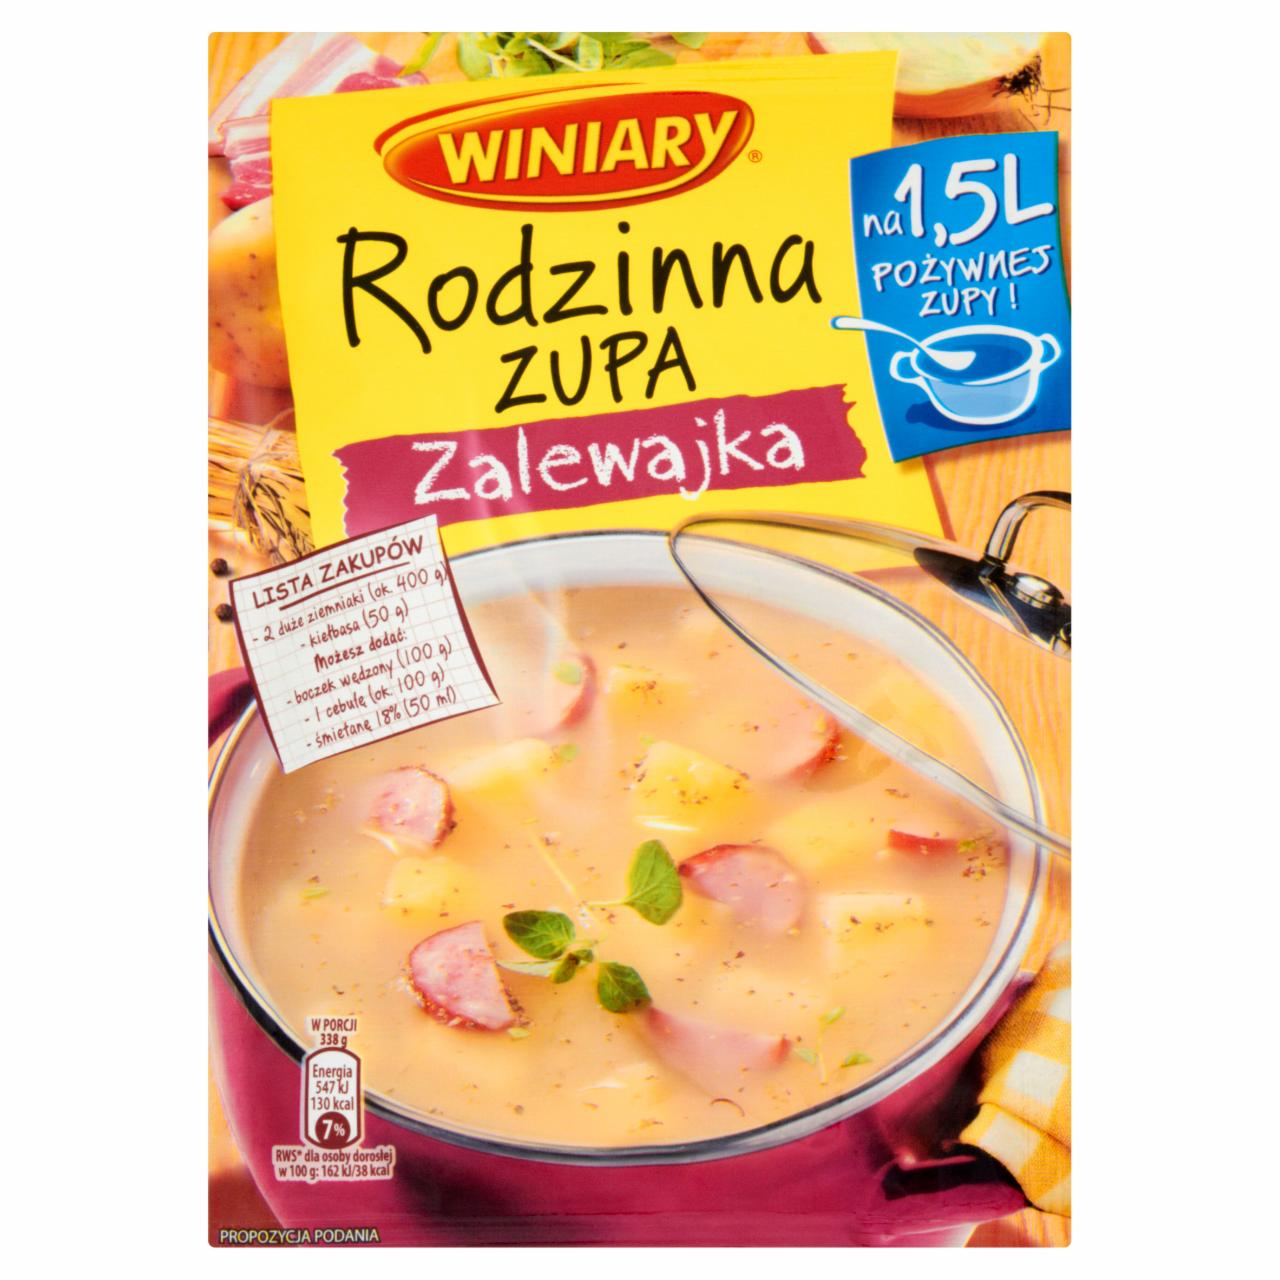 Zdjęcia - Winiary Rodzinna zupa Zalewajka 76 g